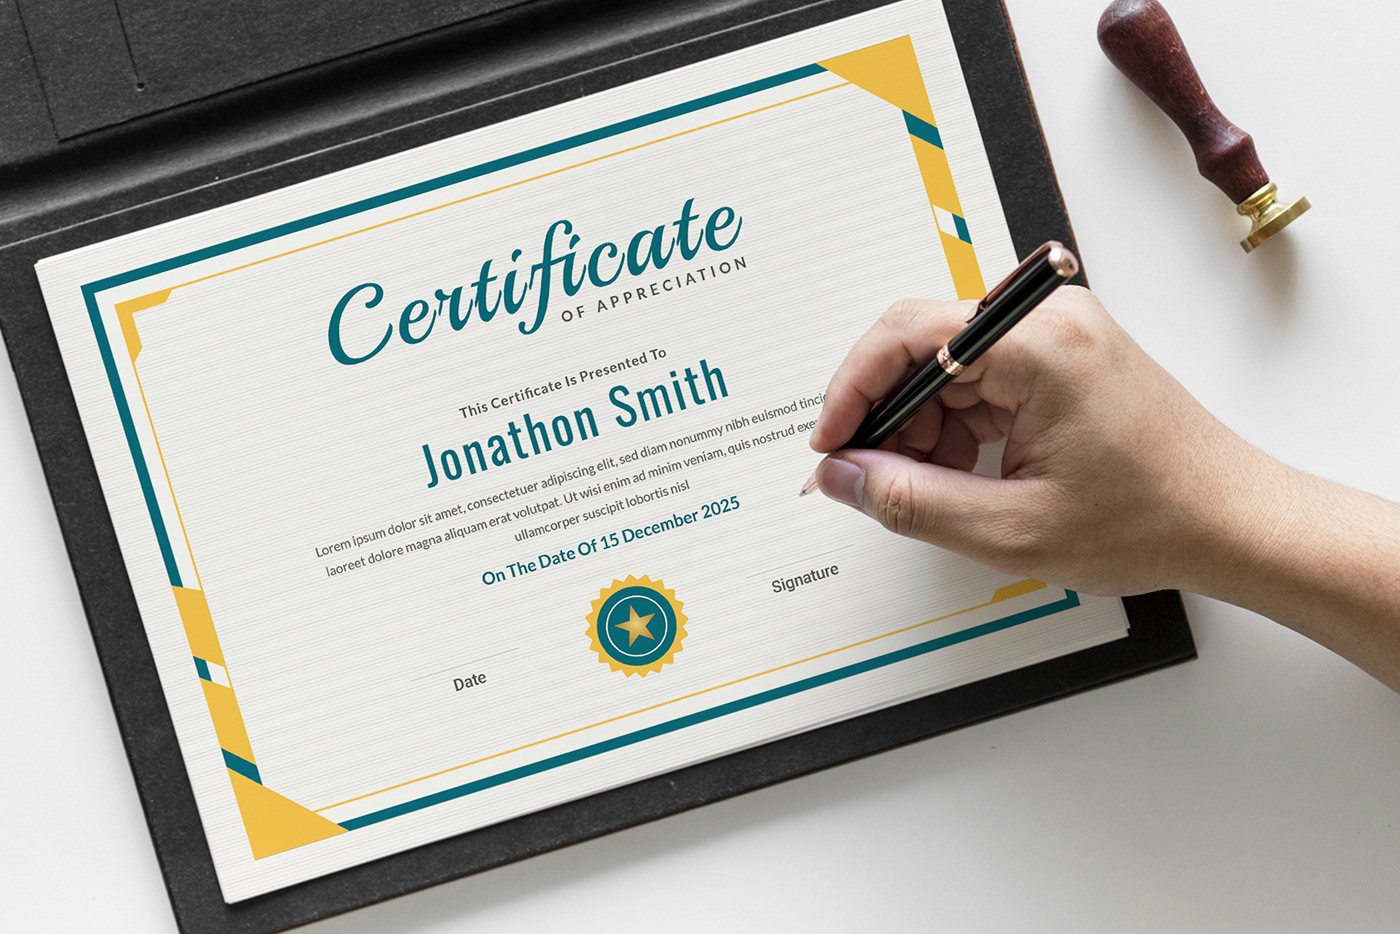 academy certificate achievement award certificate Awards Certificate certificate certificate template Certificates certification professional template